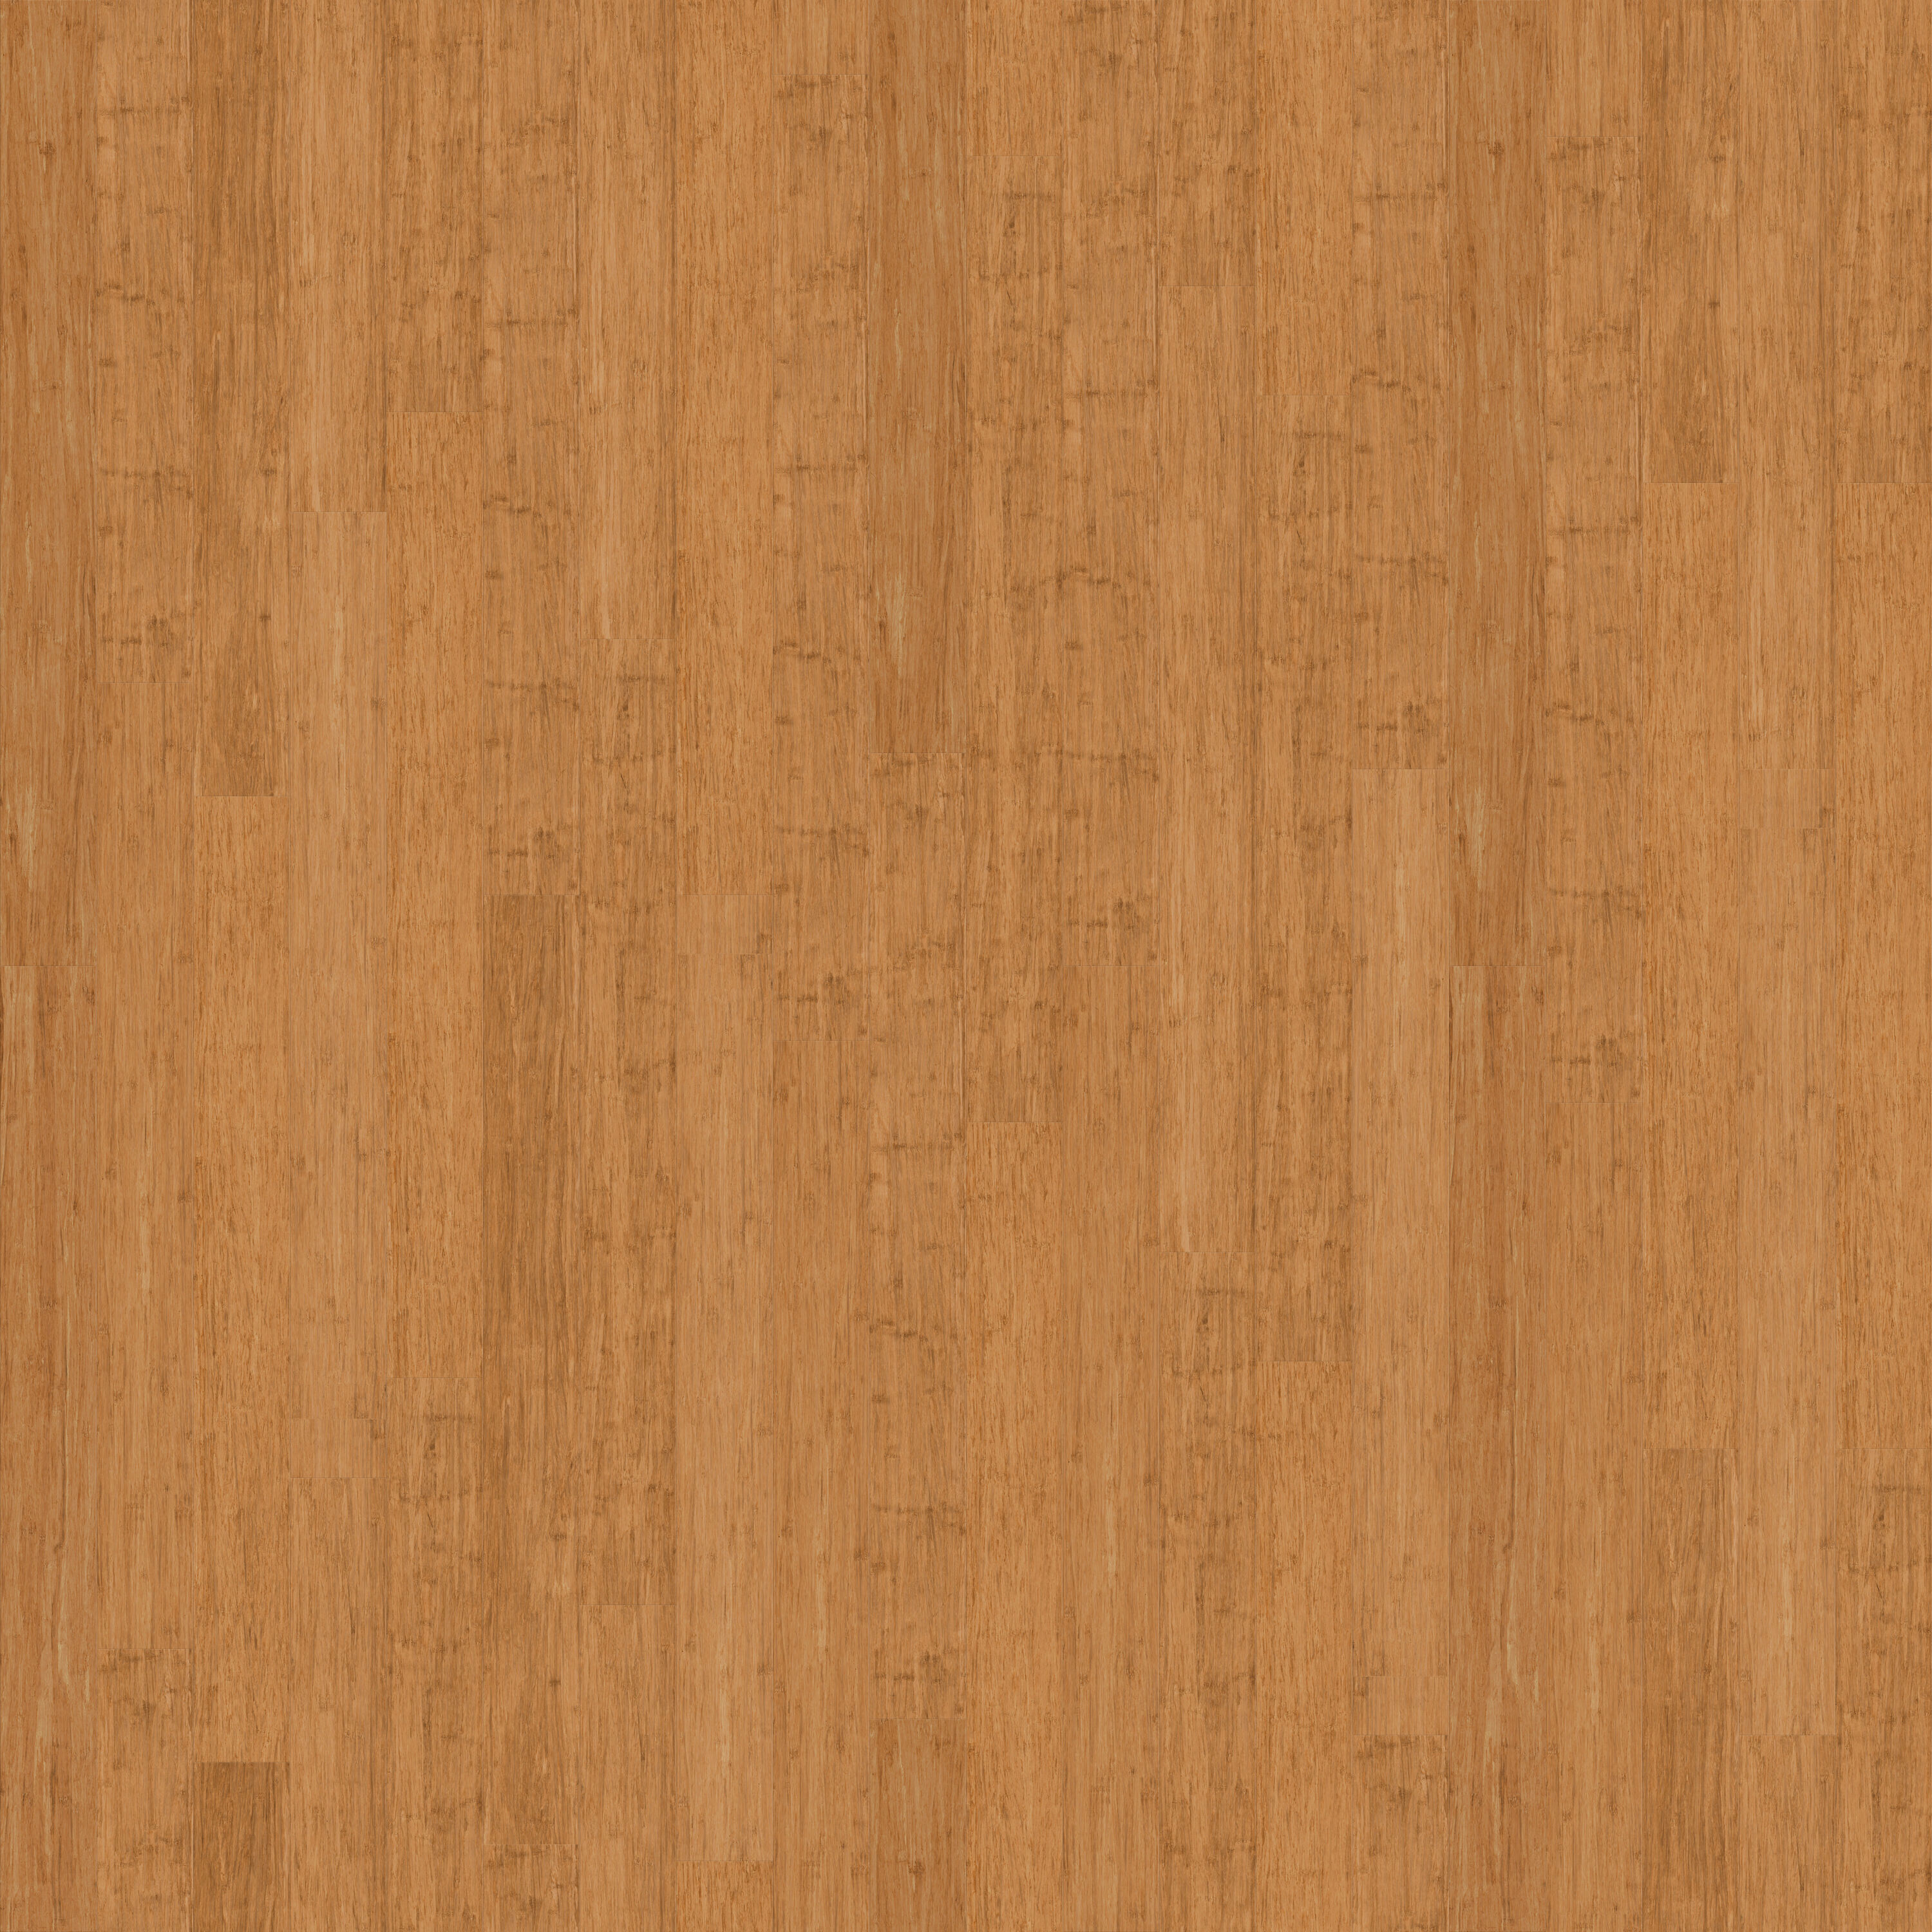 50) Wood SQUARES 2"x2"x1/8" Craft Natural Hard wood Flat  Shapes-Sheet USA MADE!